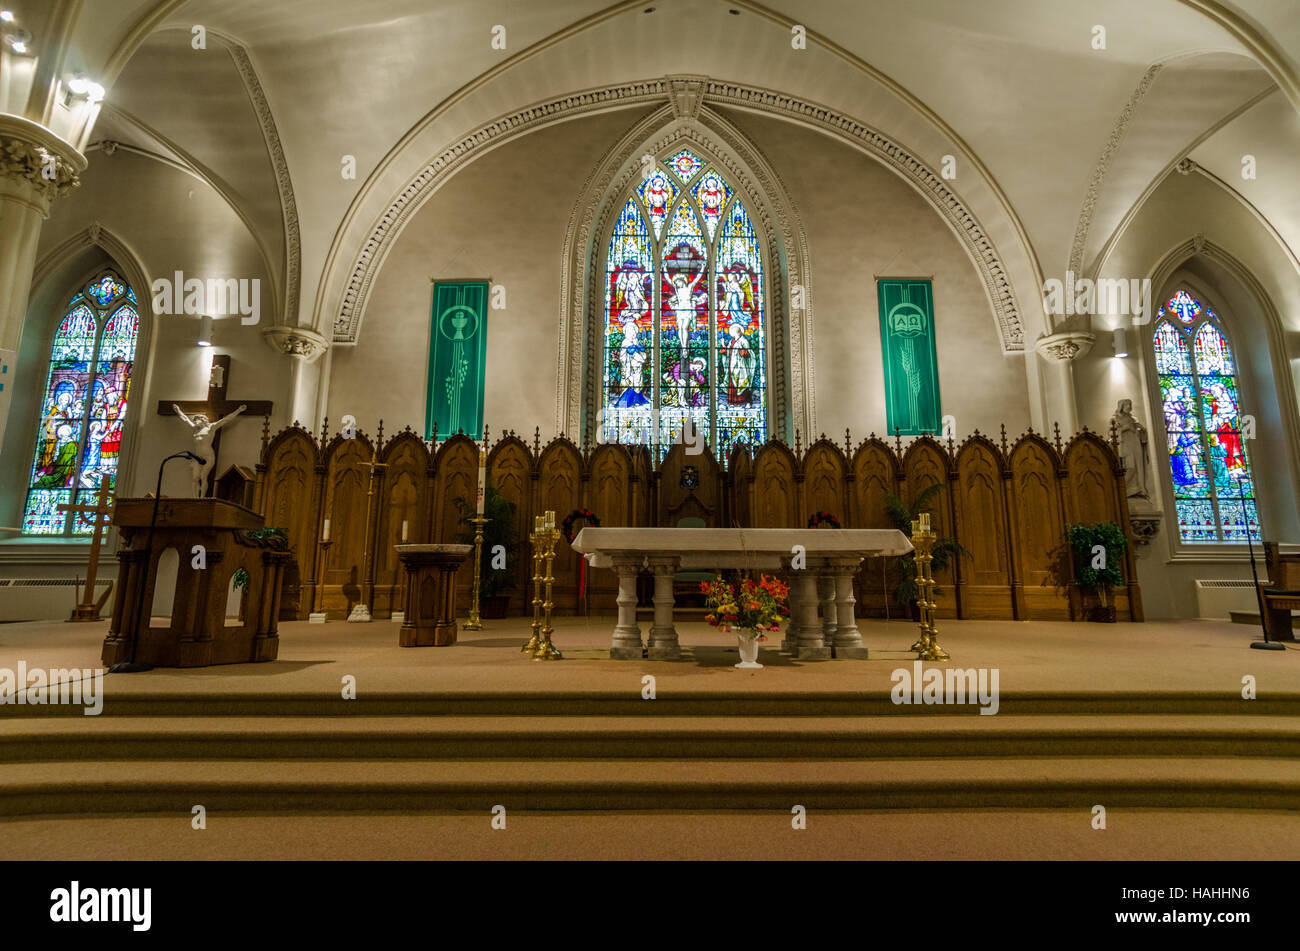 Innenansicht mit Altar in der Kathedrale von Saint Catherine von Alexandria Kirche. Stockfoto